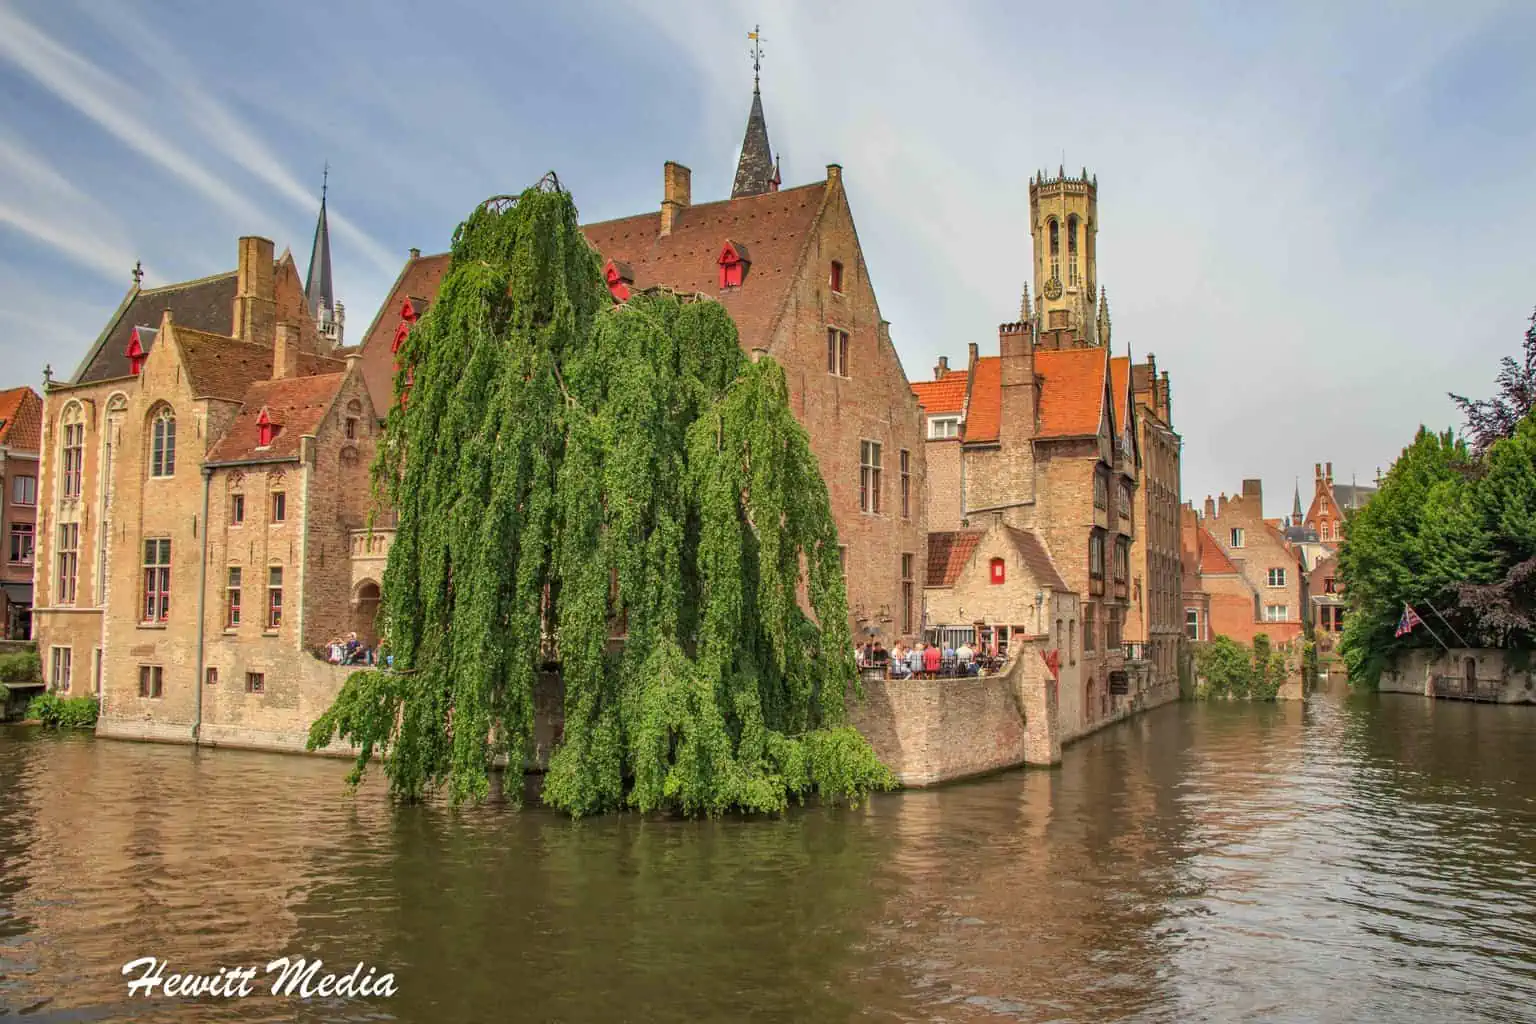 Europe's Best Destinations - Bruges